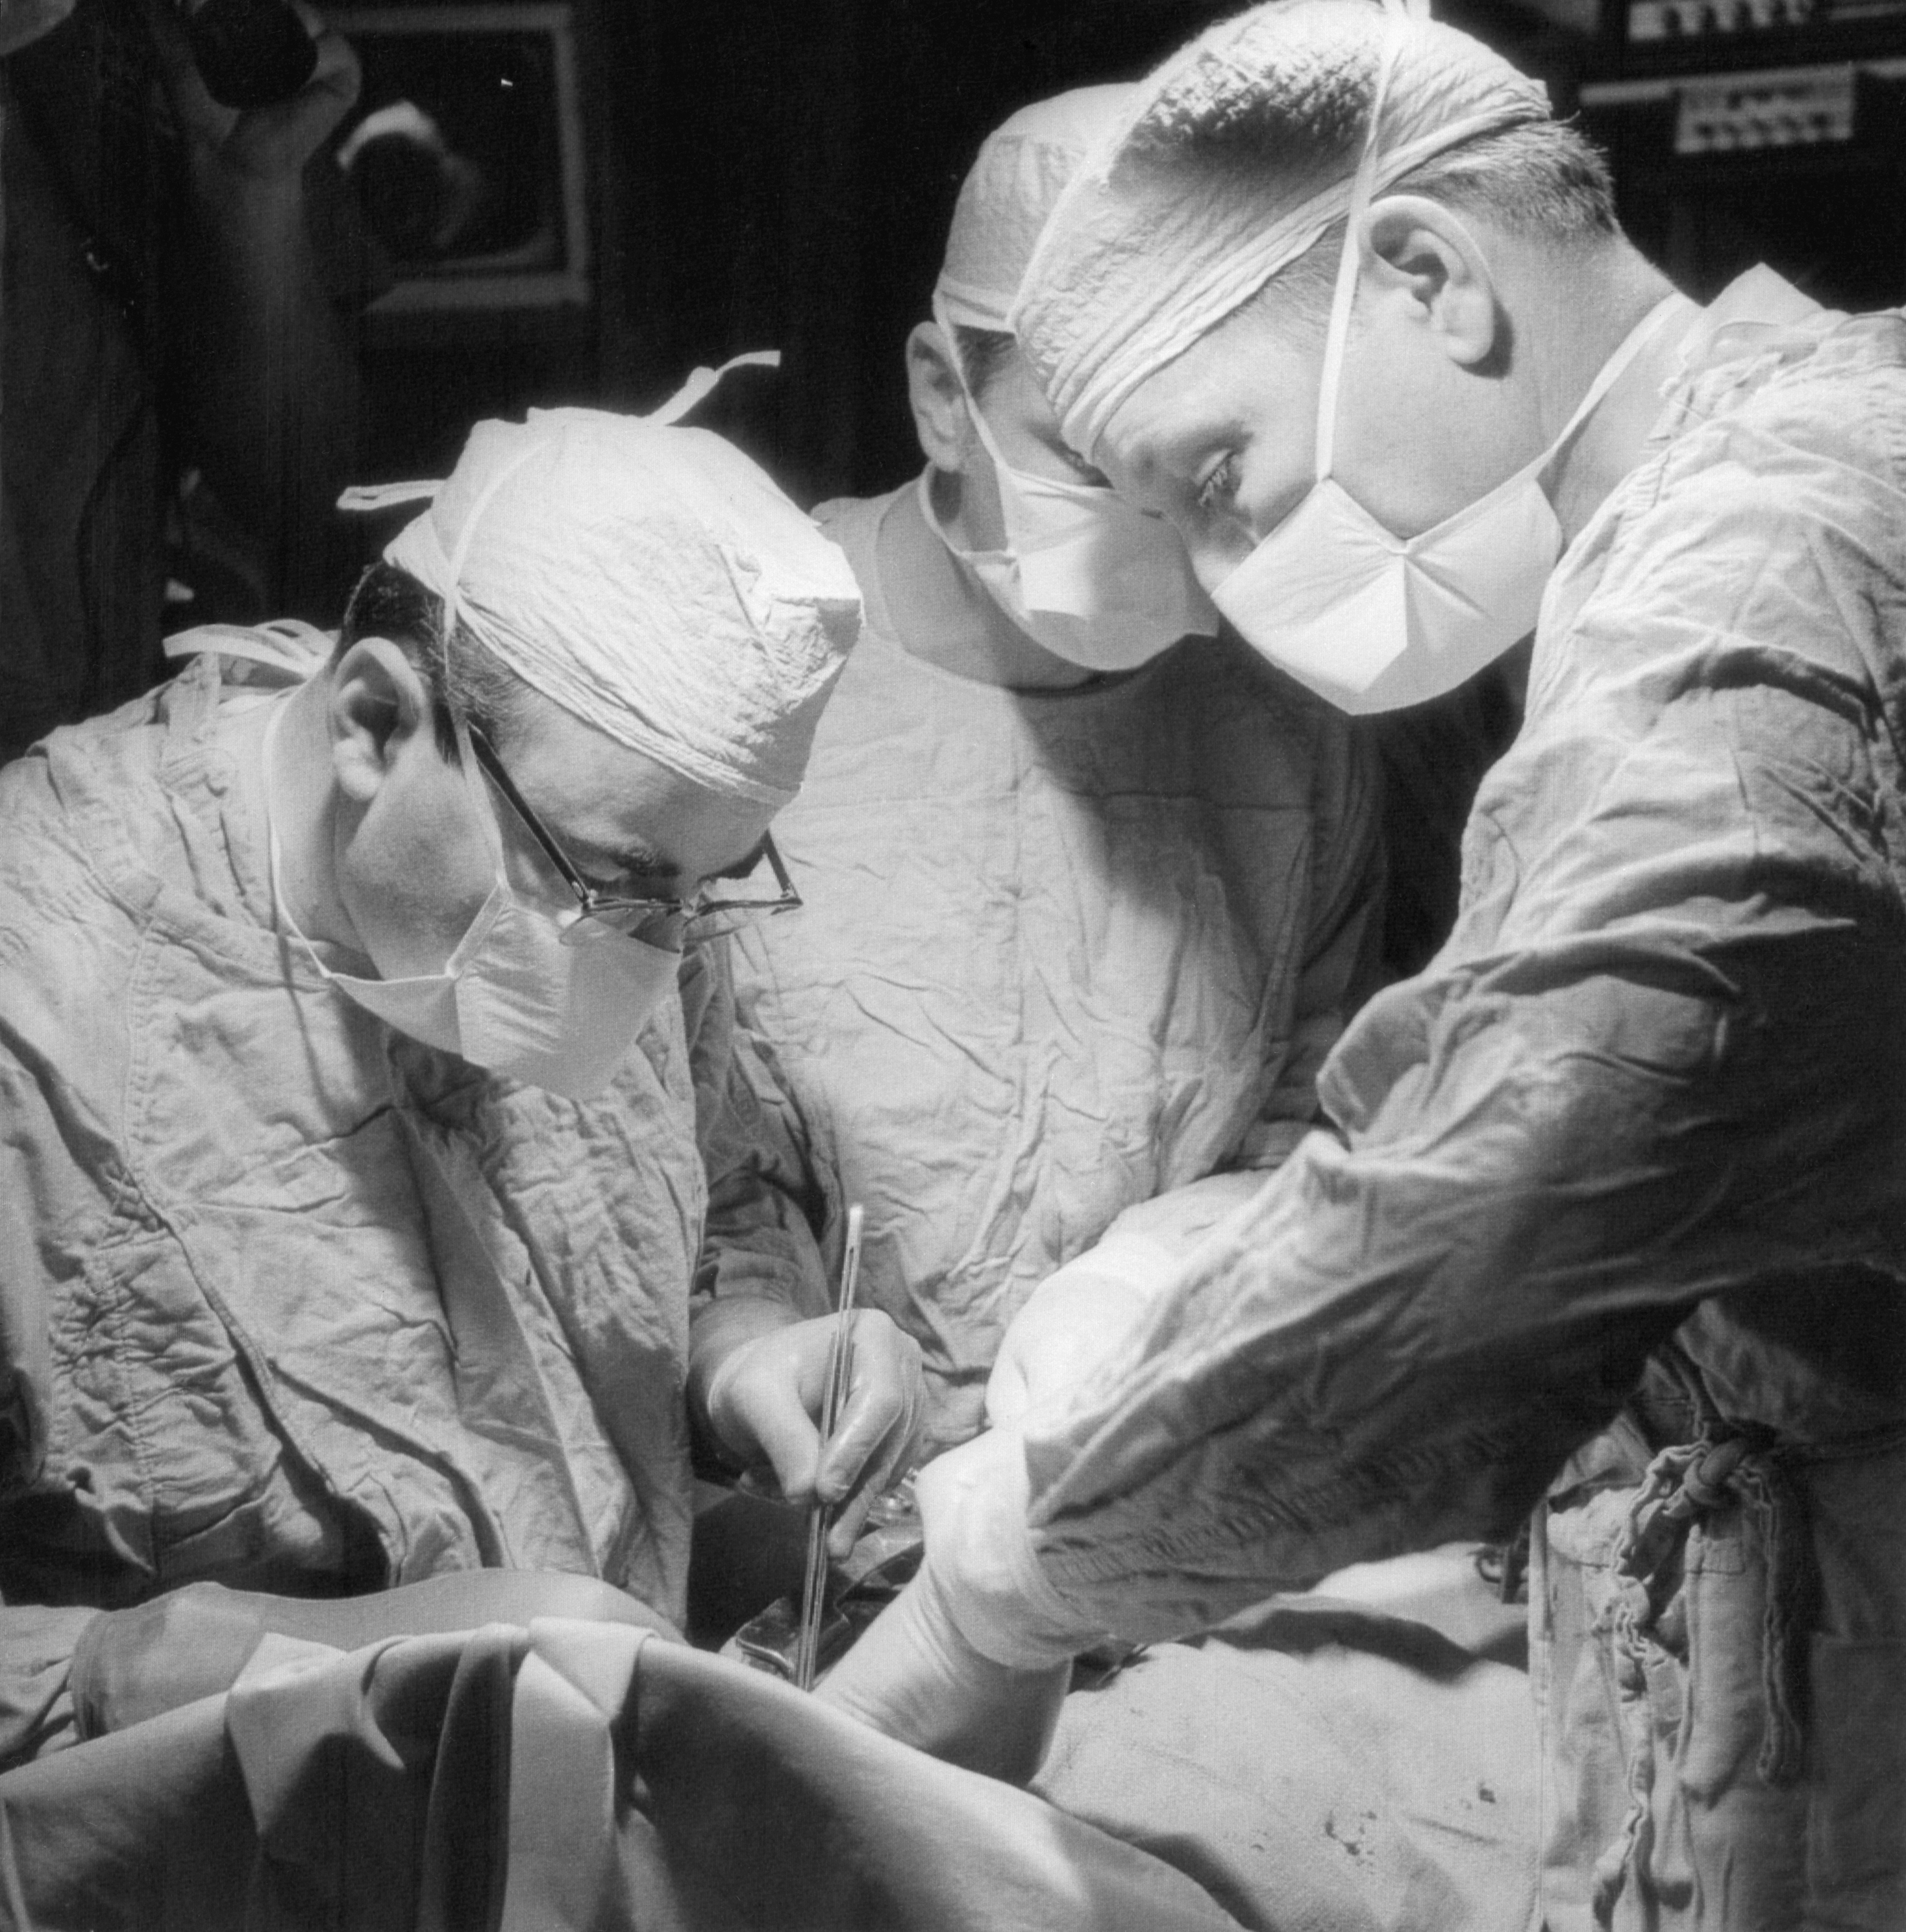 Foto originale scattata il 4 maggio 1969, quando entrambi i medici impiantarono il cuore artificiale / 